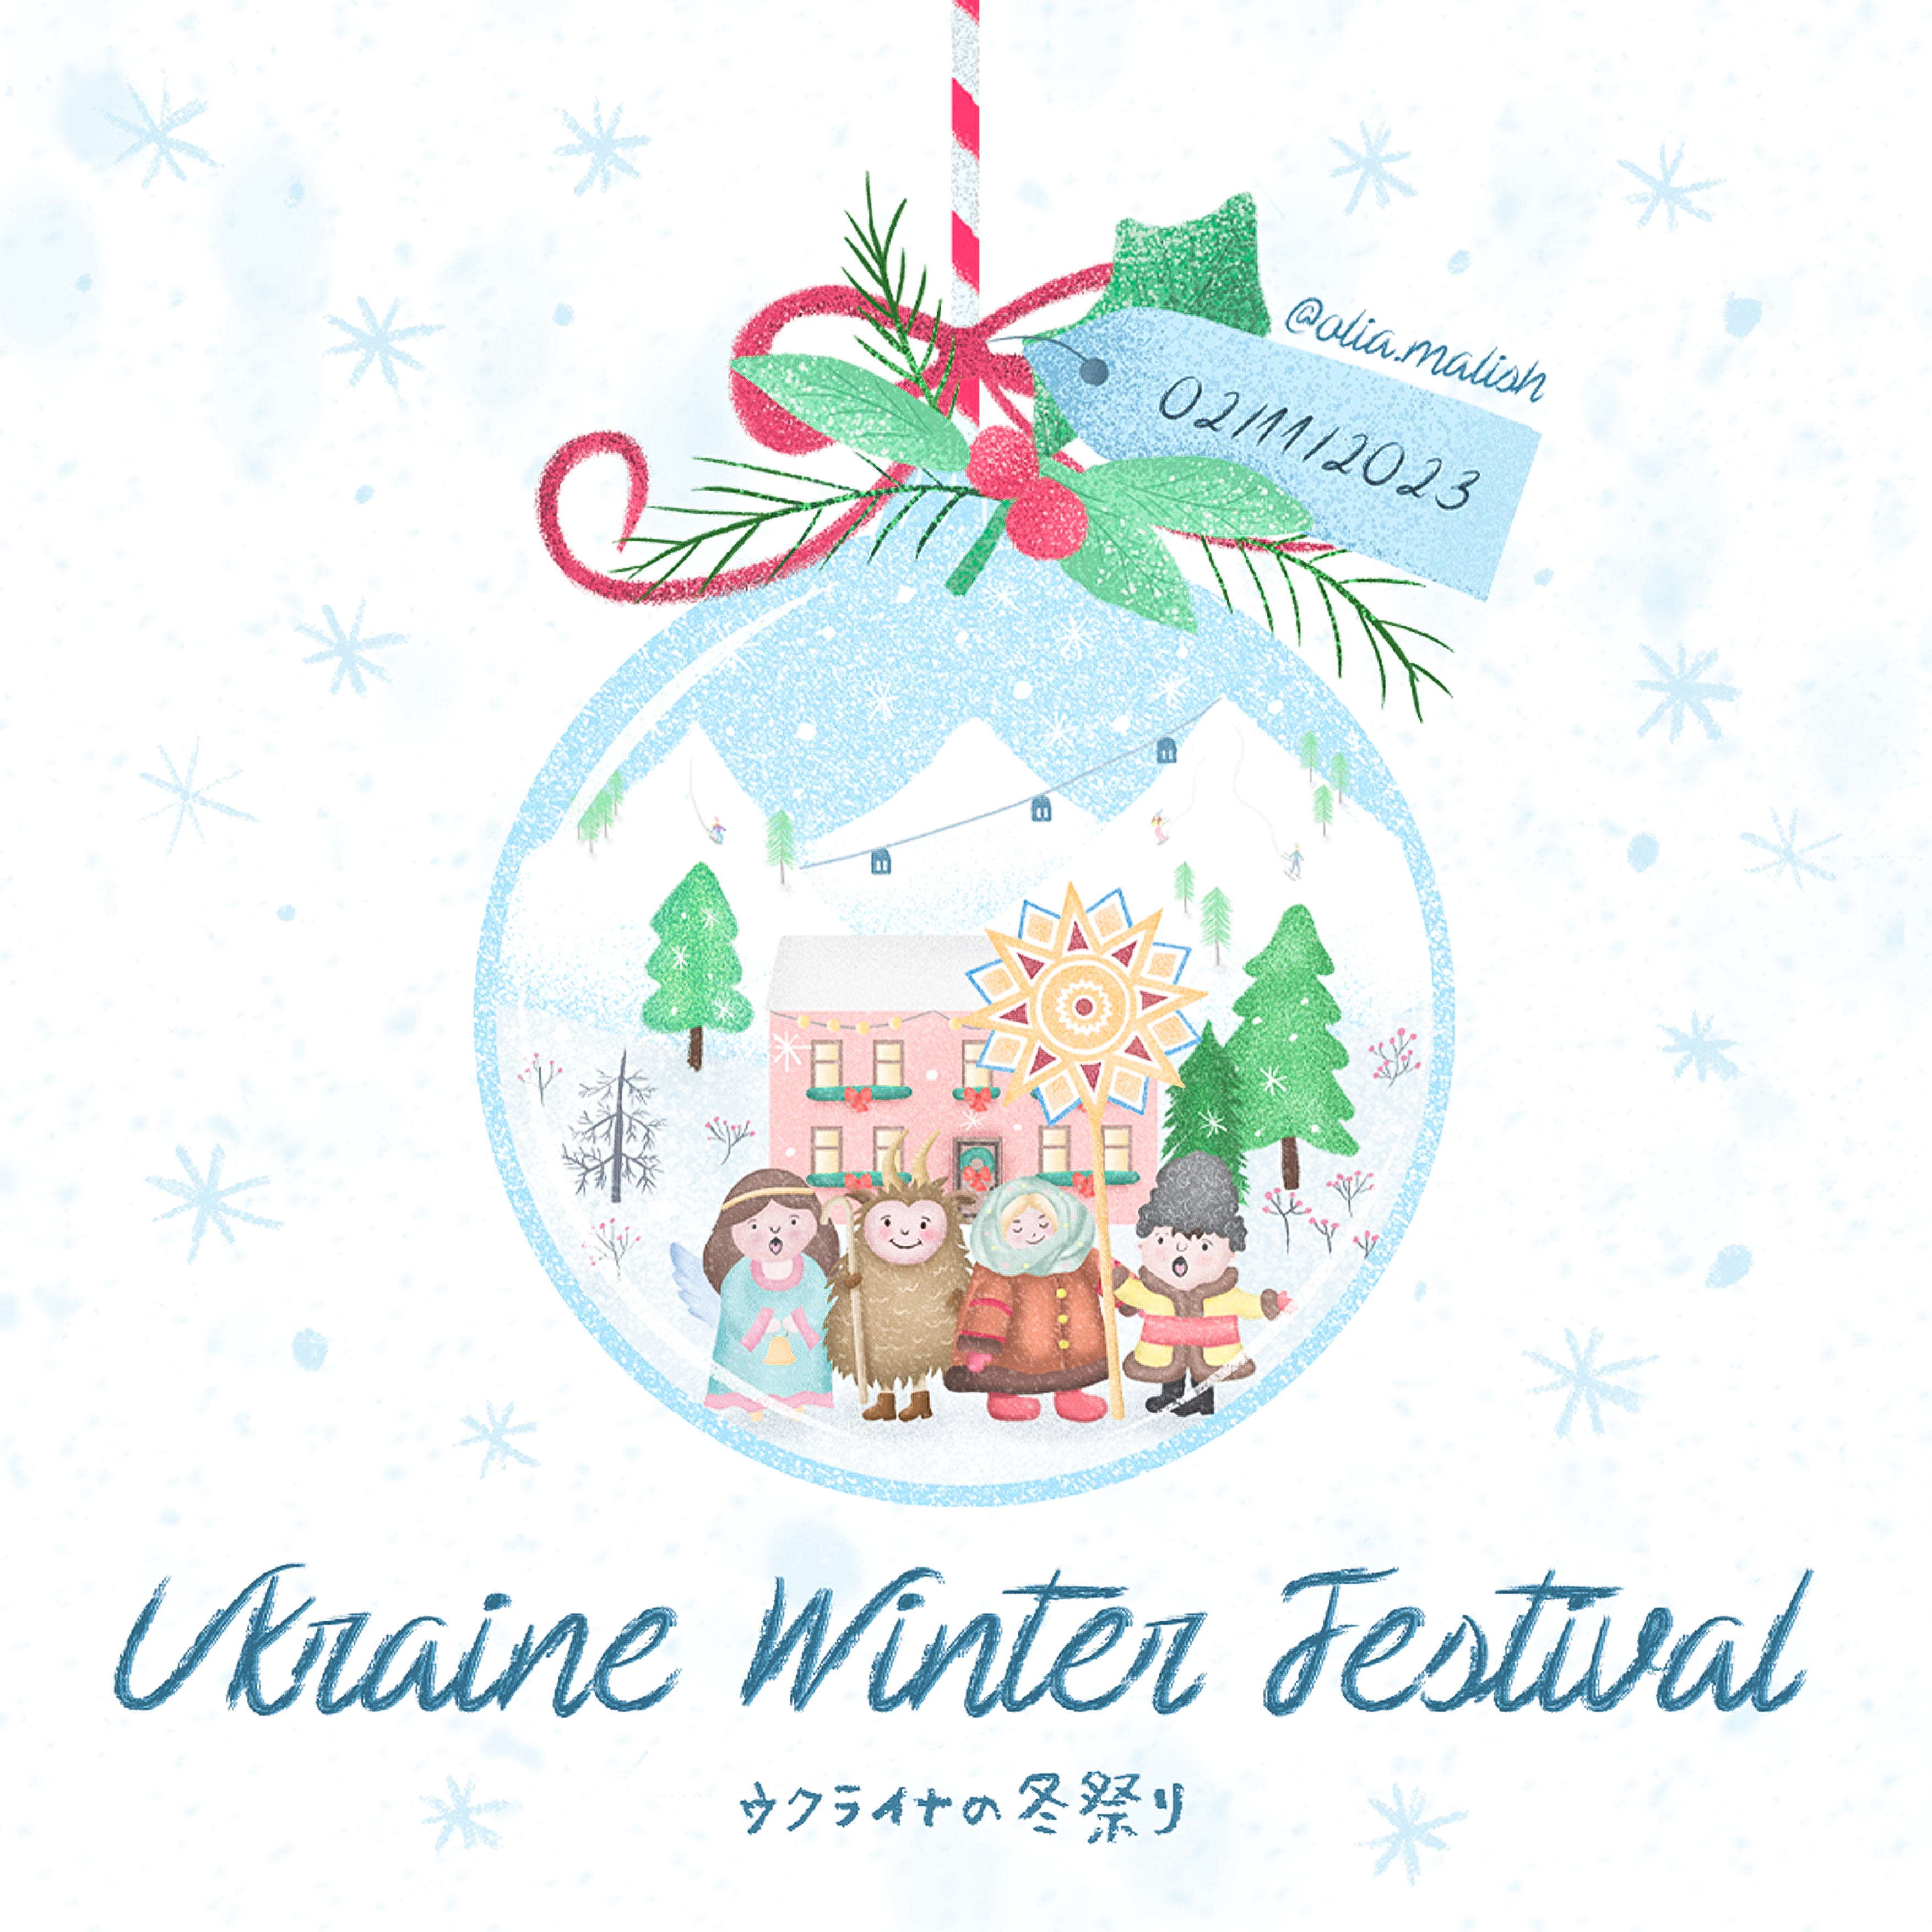 Ukraine Winter Festival